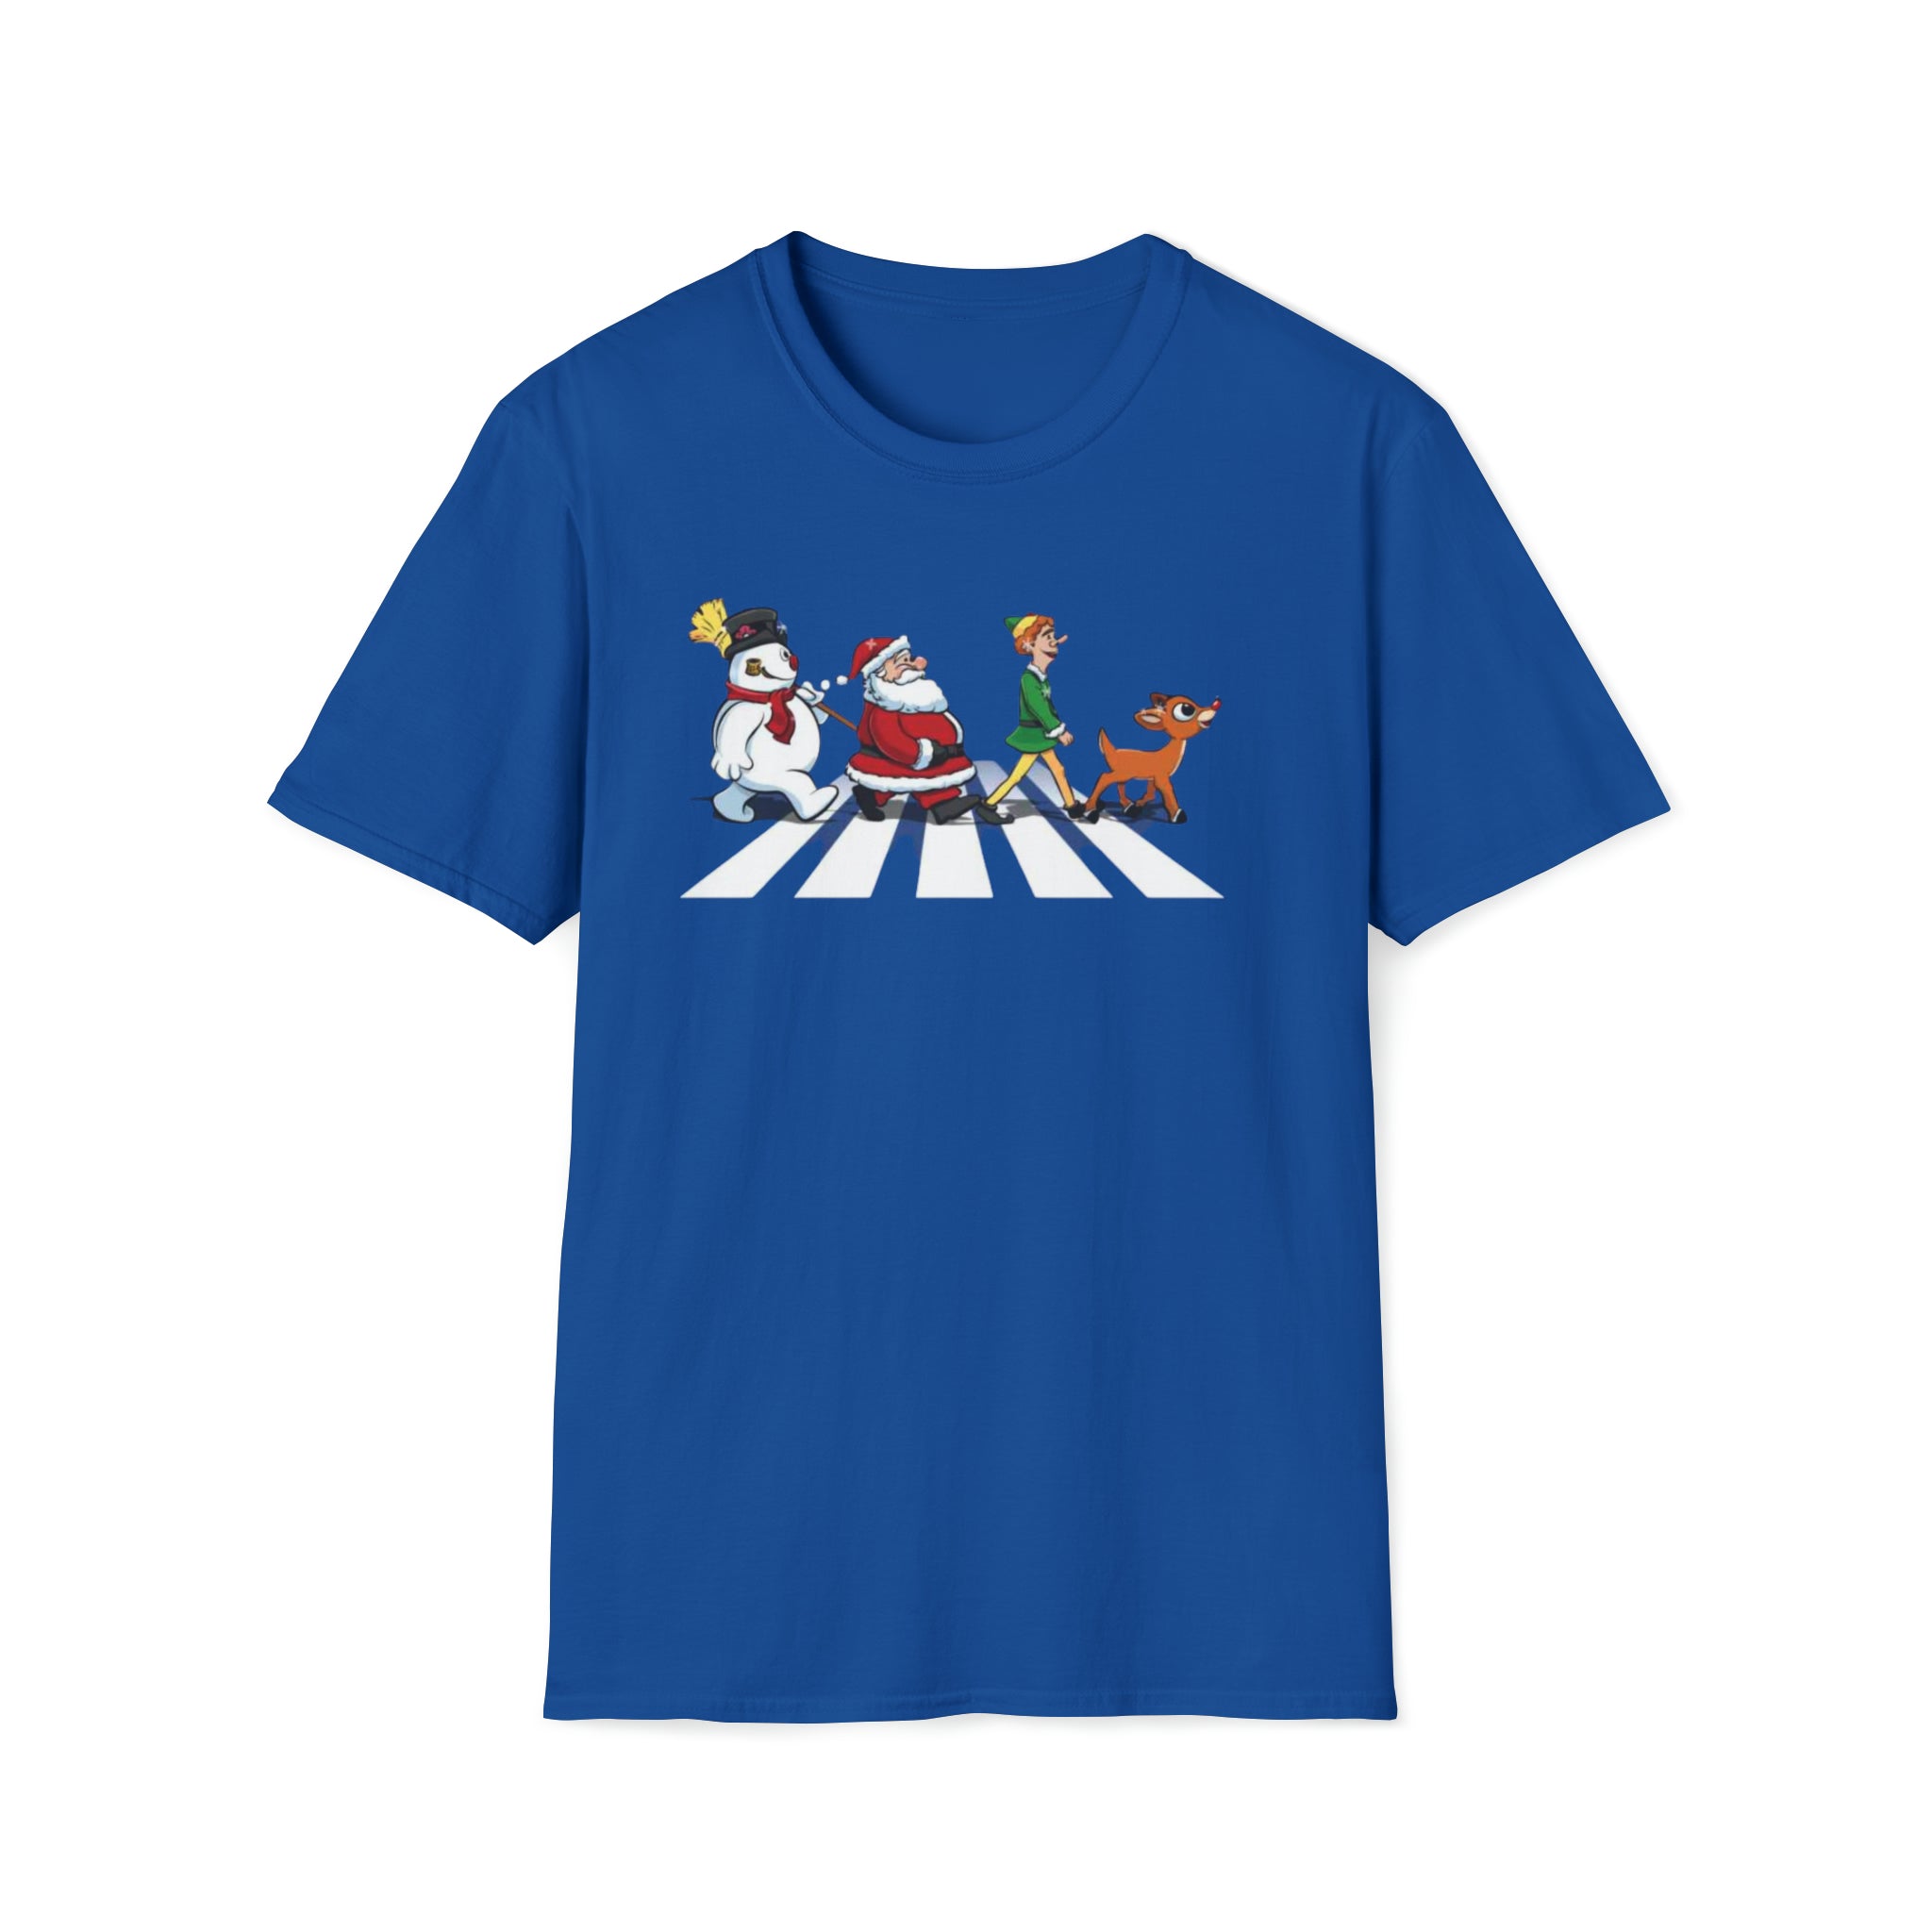 The Christmas Gang T-Shirt